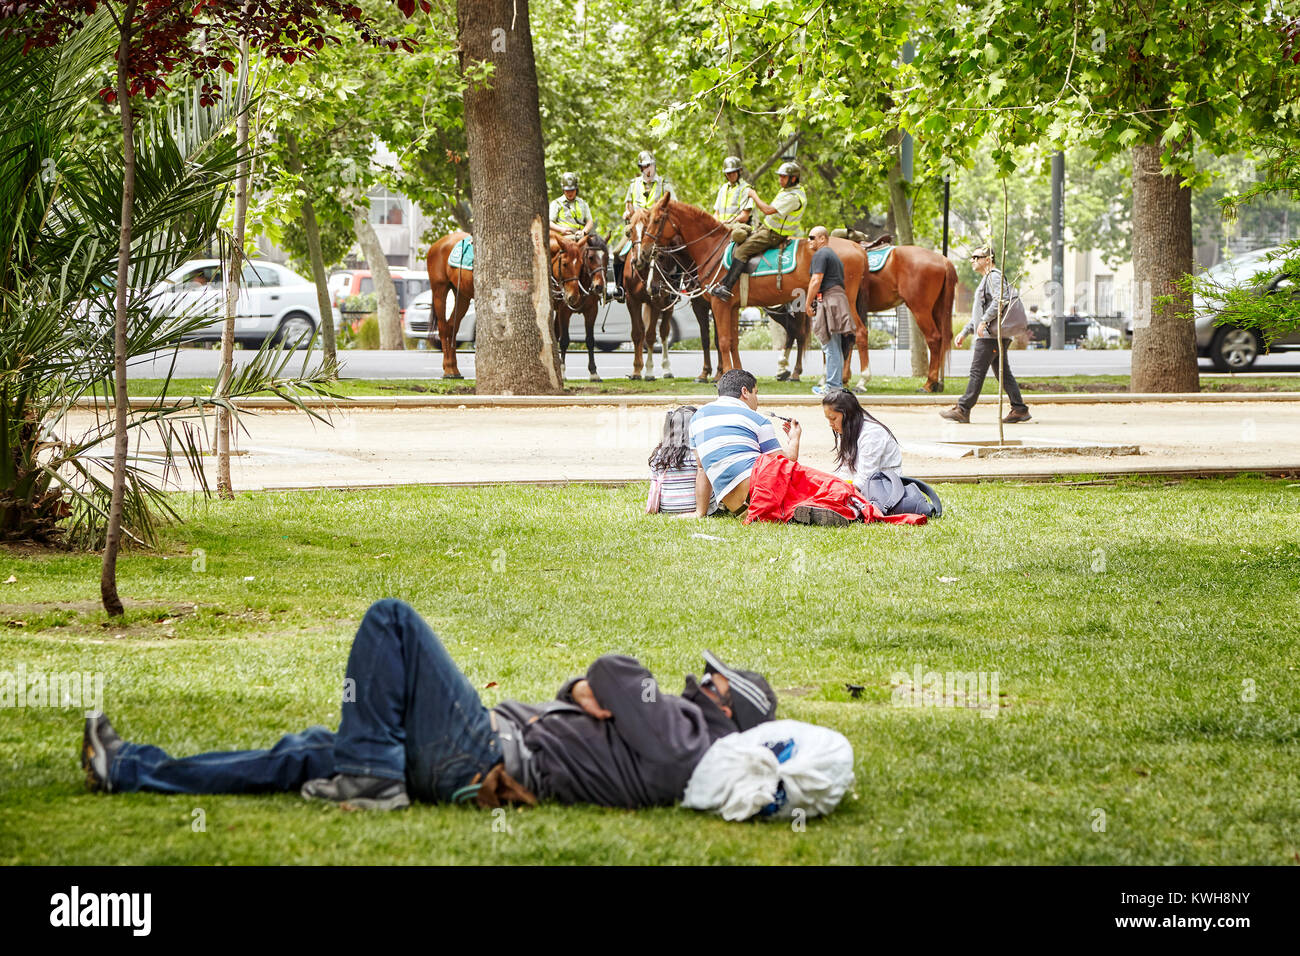 Santiago de Cile, Cile - 24 Ottobre 2013: la gente di riposo in un parco municipale con la polizia montata in una distanza (Carabineros de Chile). Foto Stock